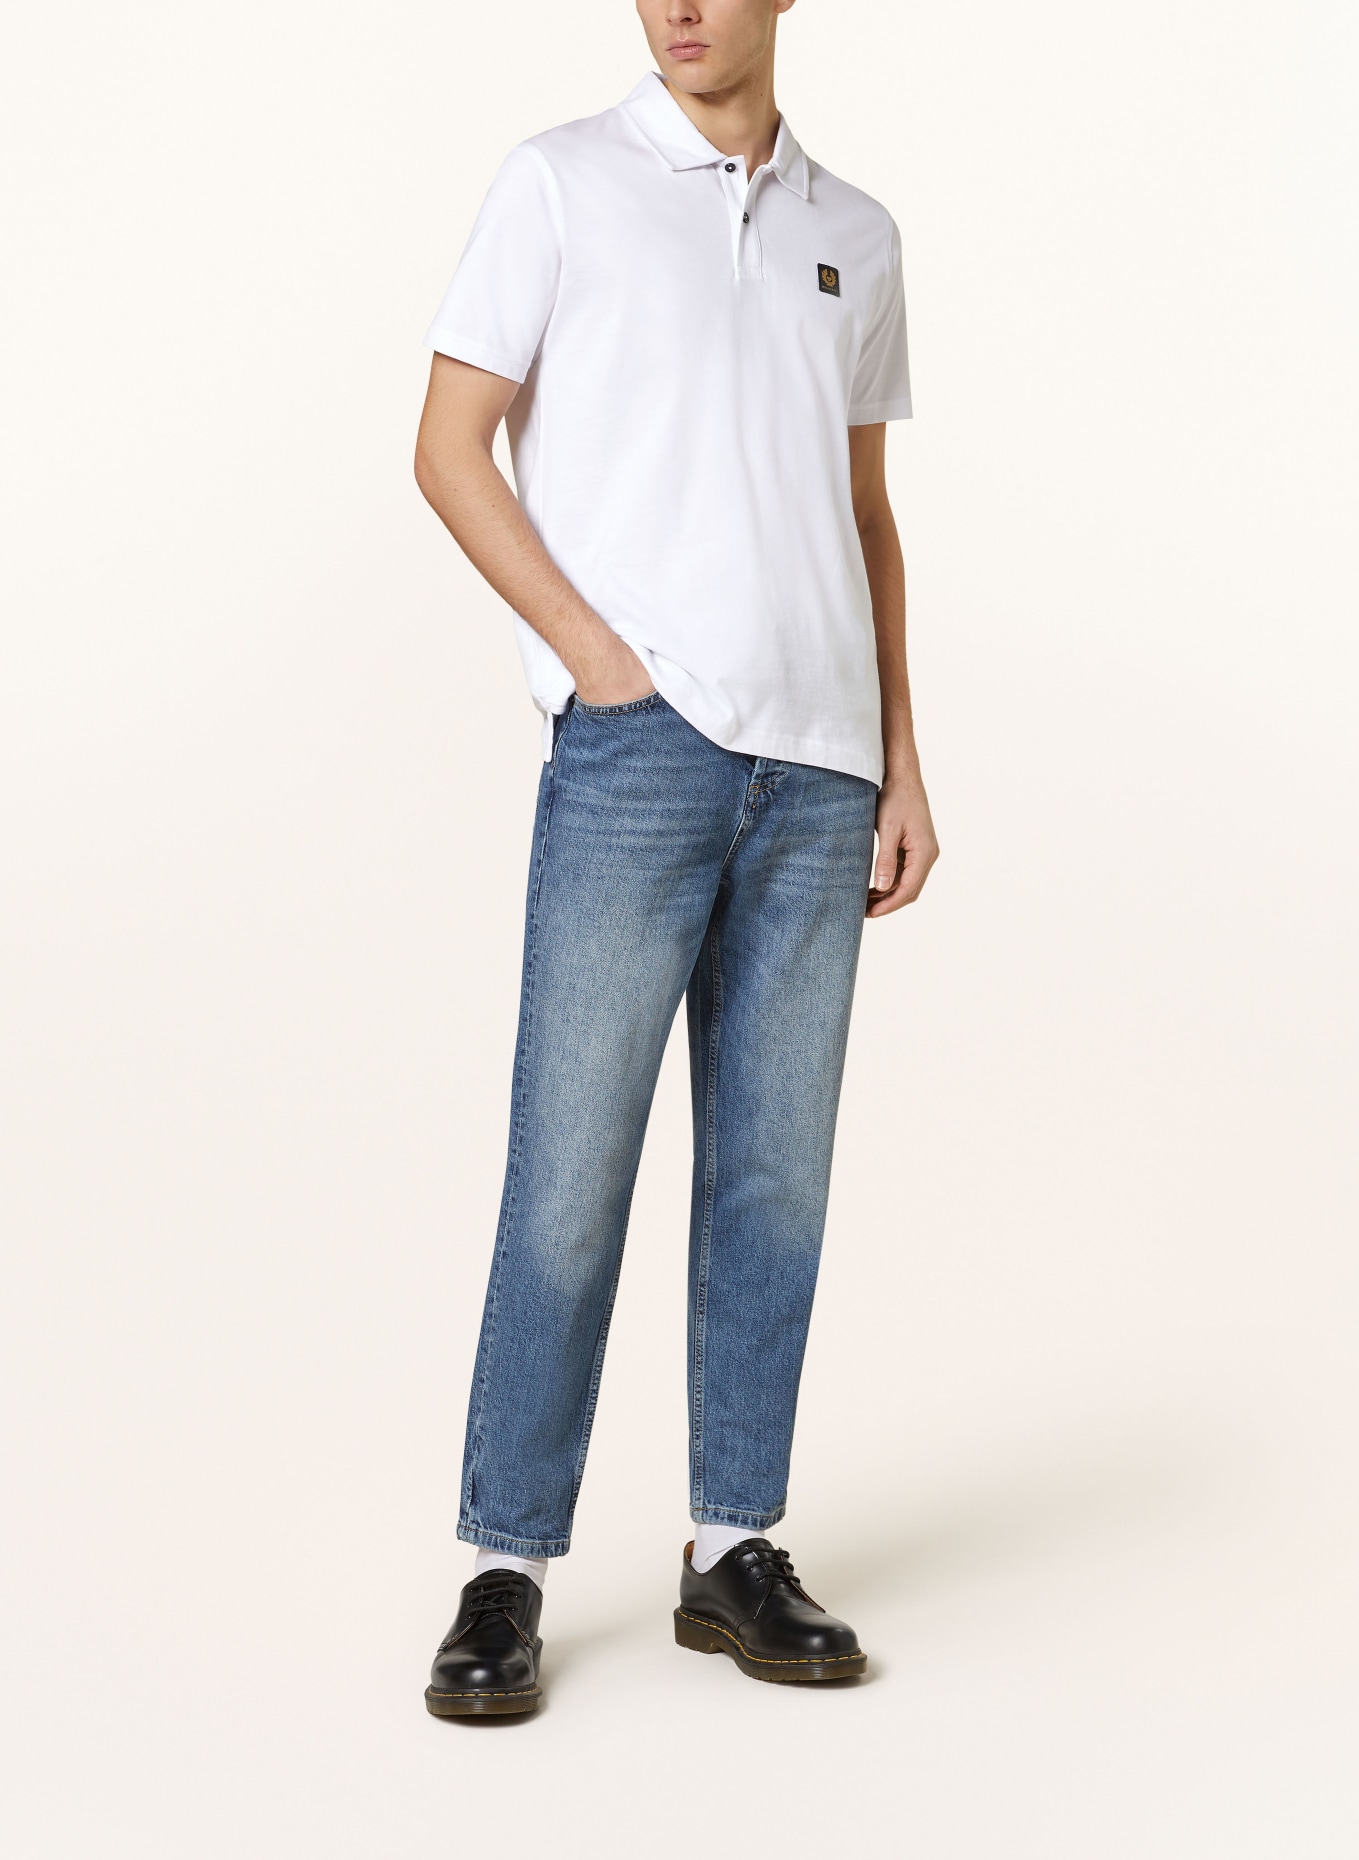 BELSTAFF Piqué polo shirt, Color: WHITE (Image 2)